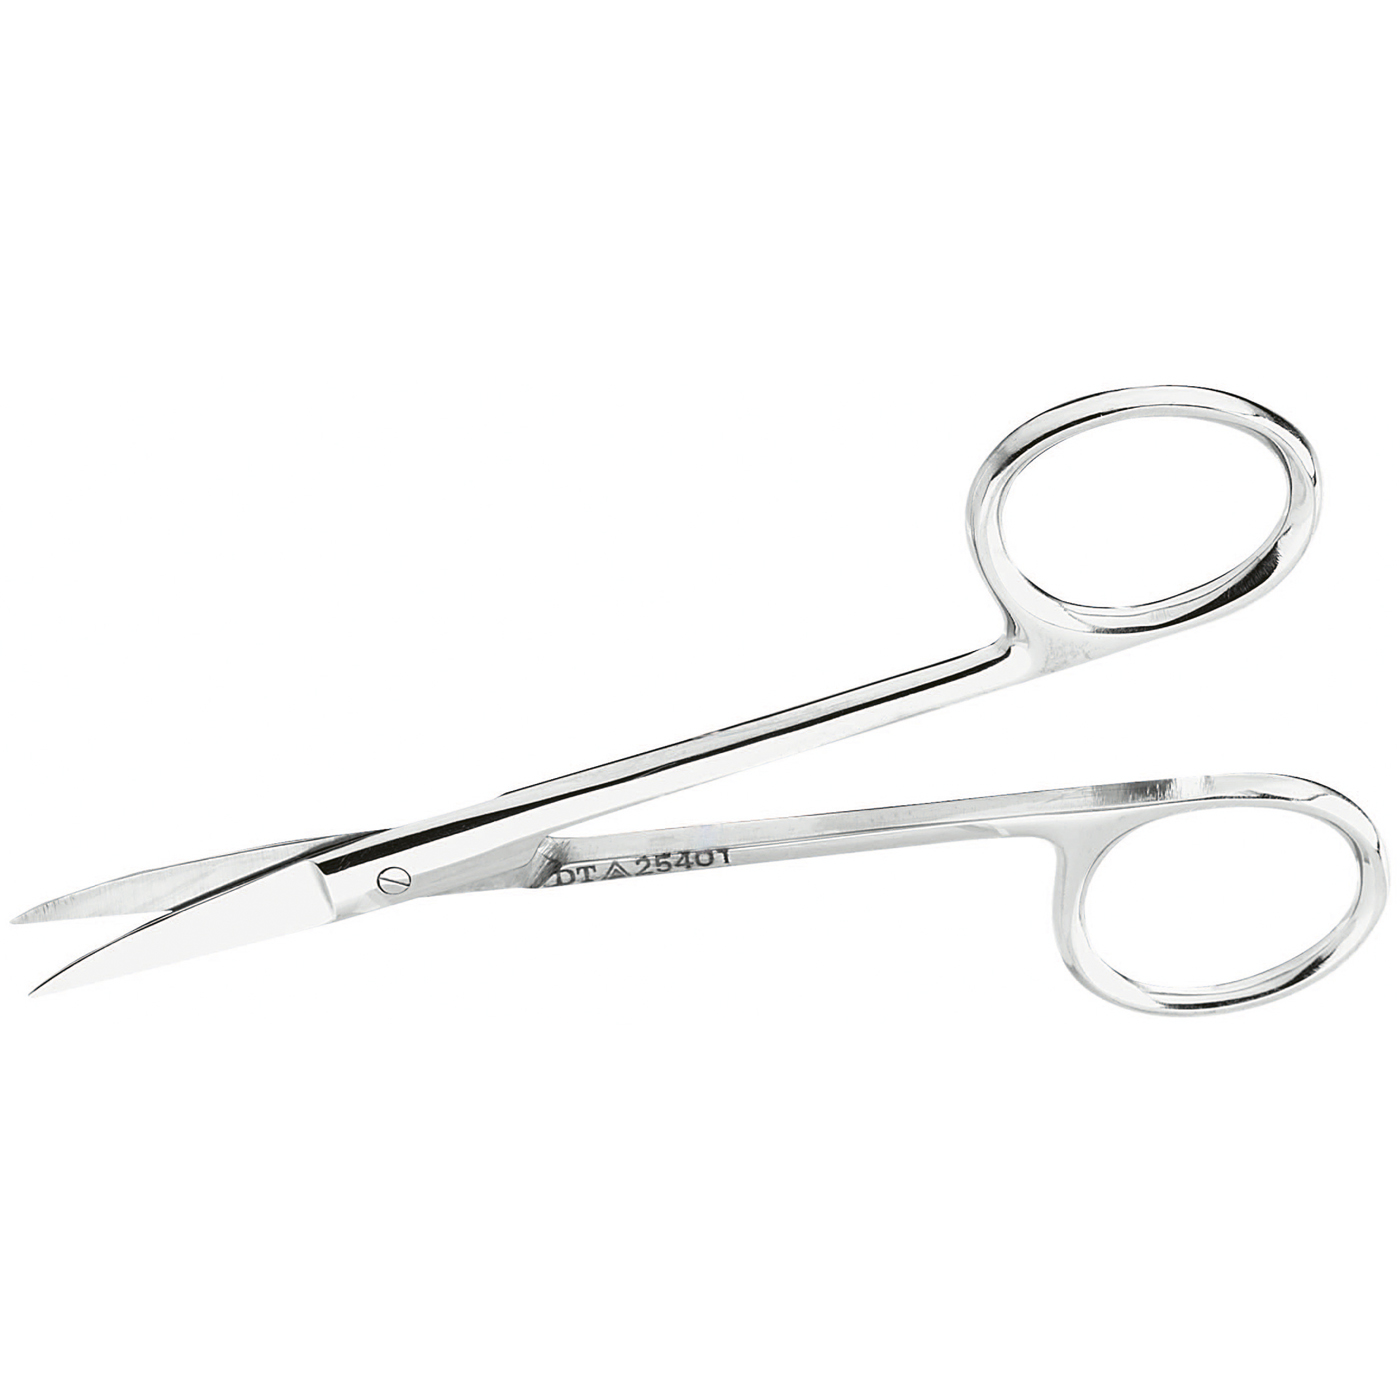 FINO Foil Scissors, Curved, 110 mm - 1 piece